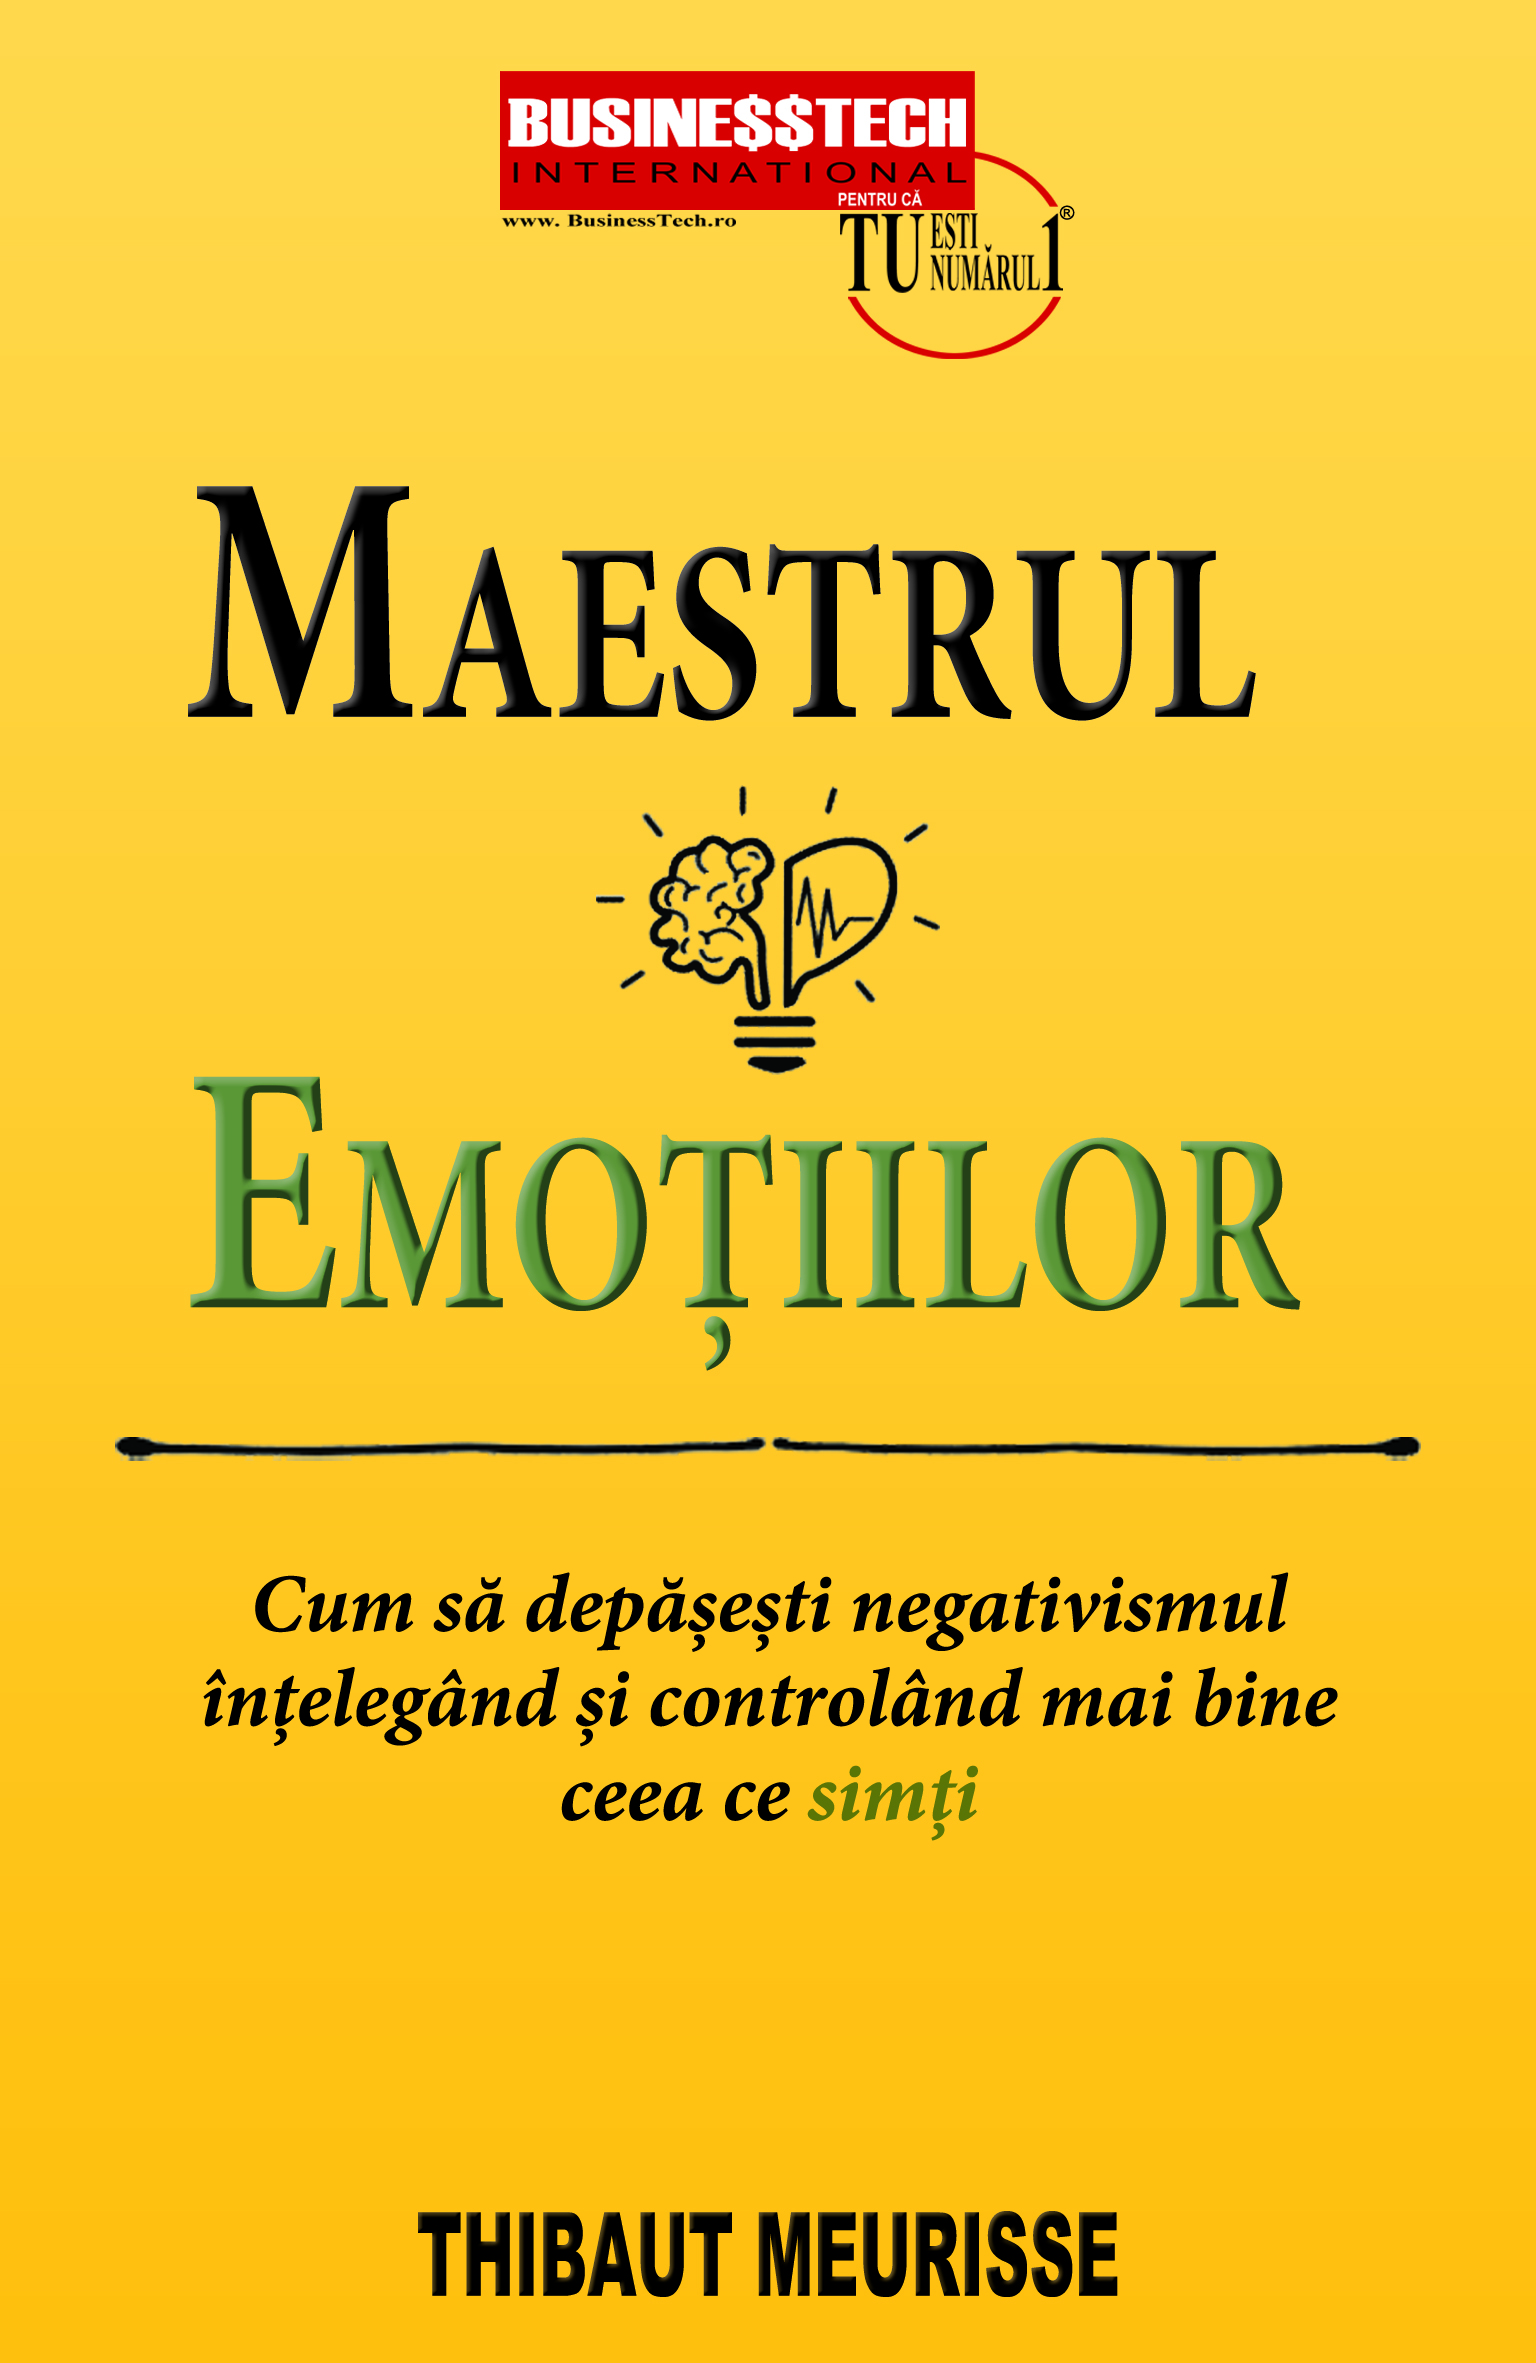 Maestrul emotiilor | Thibaut Meurisse